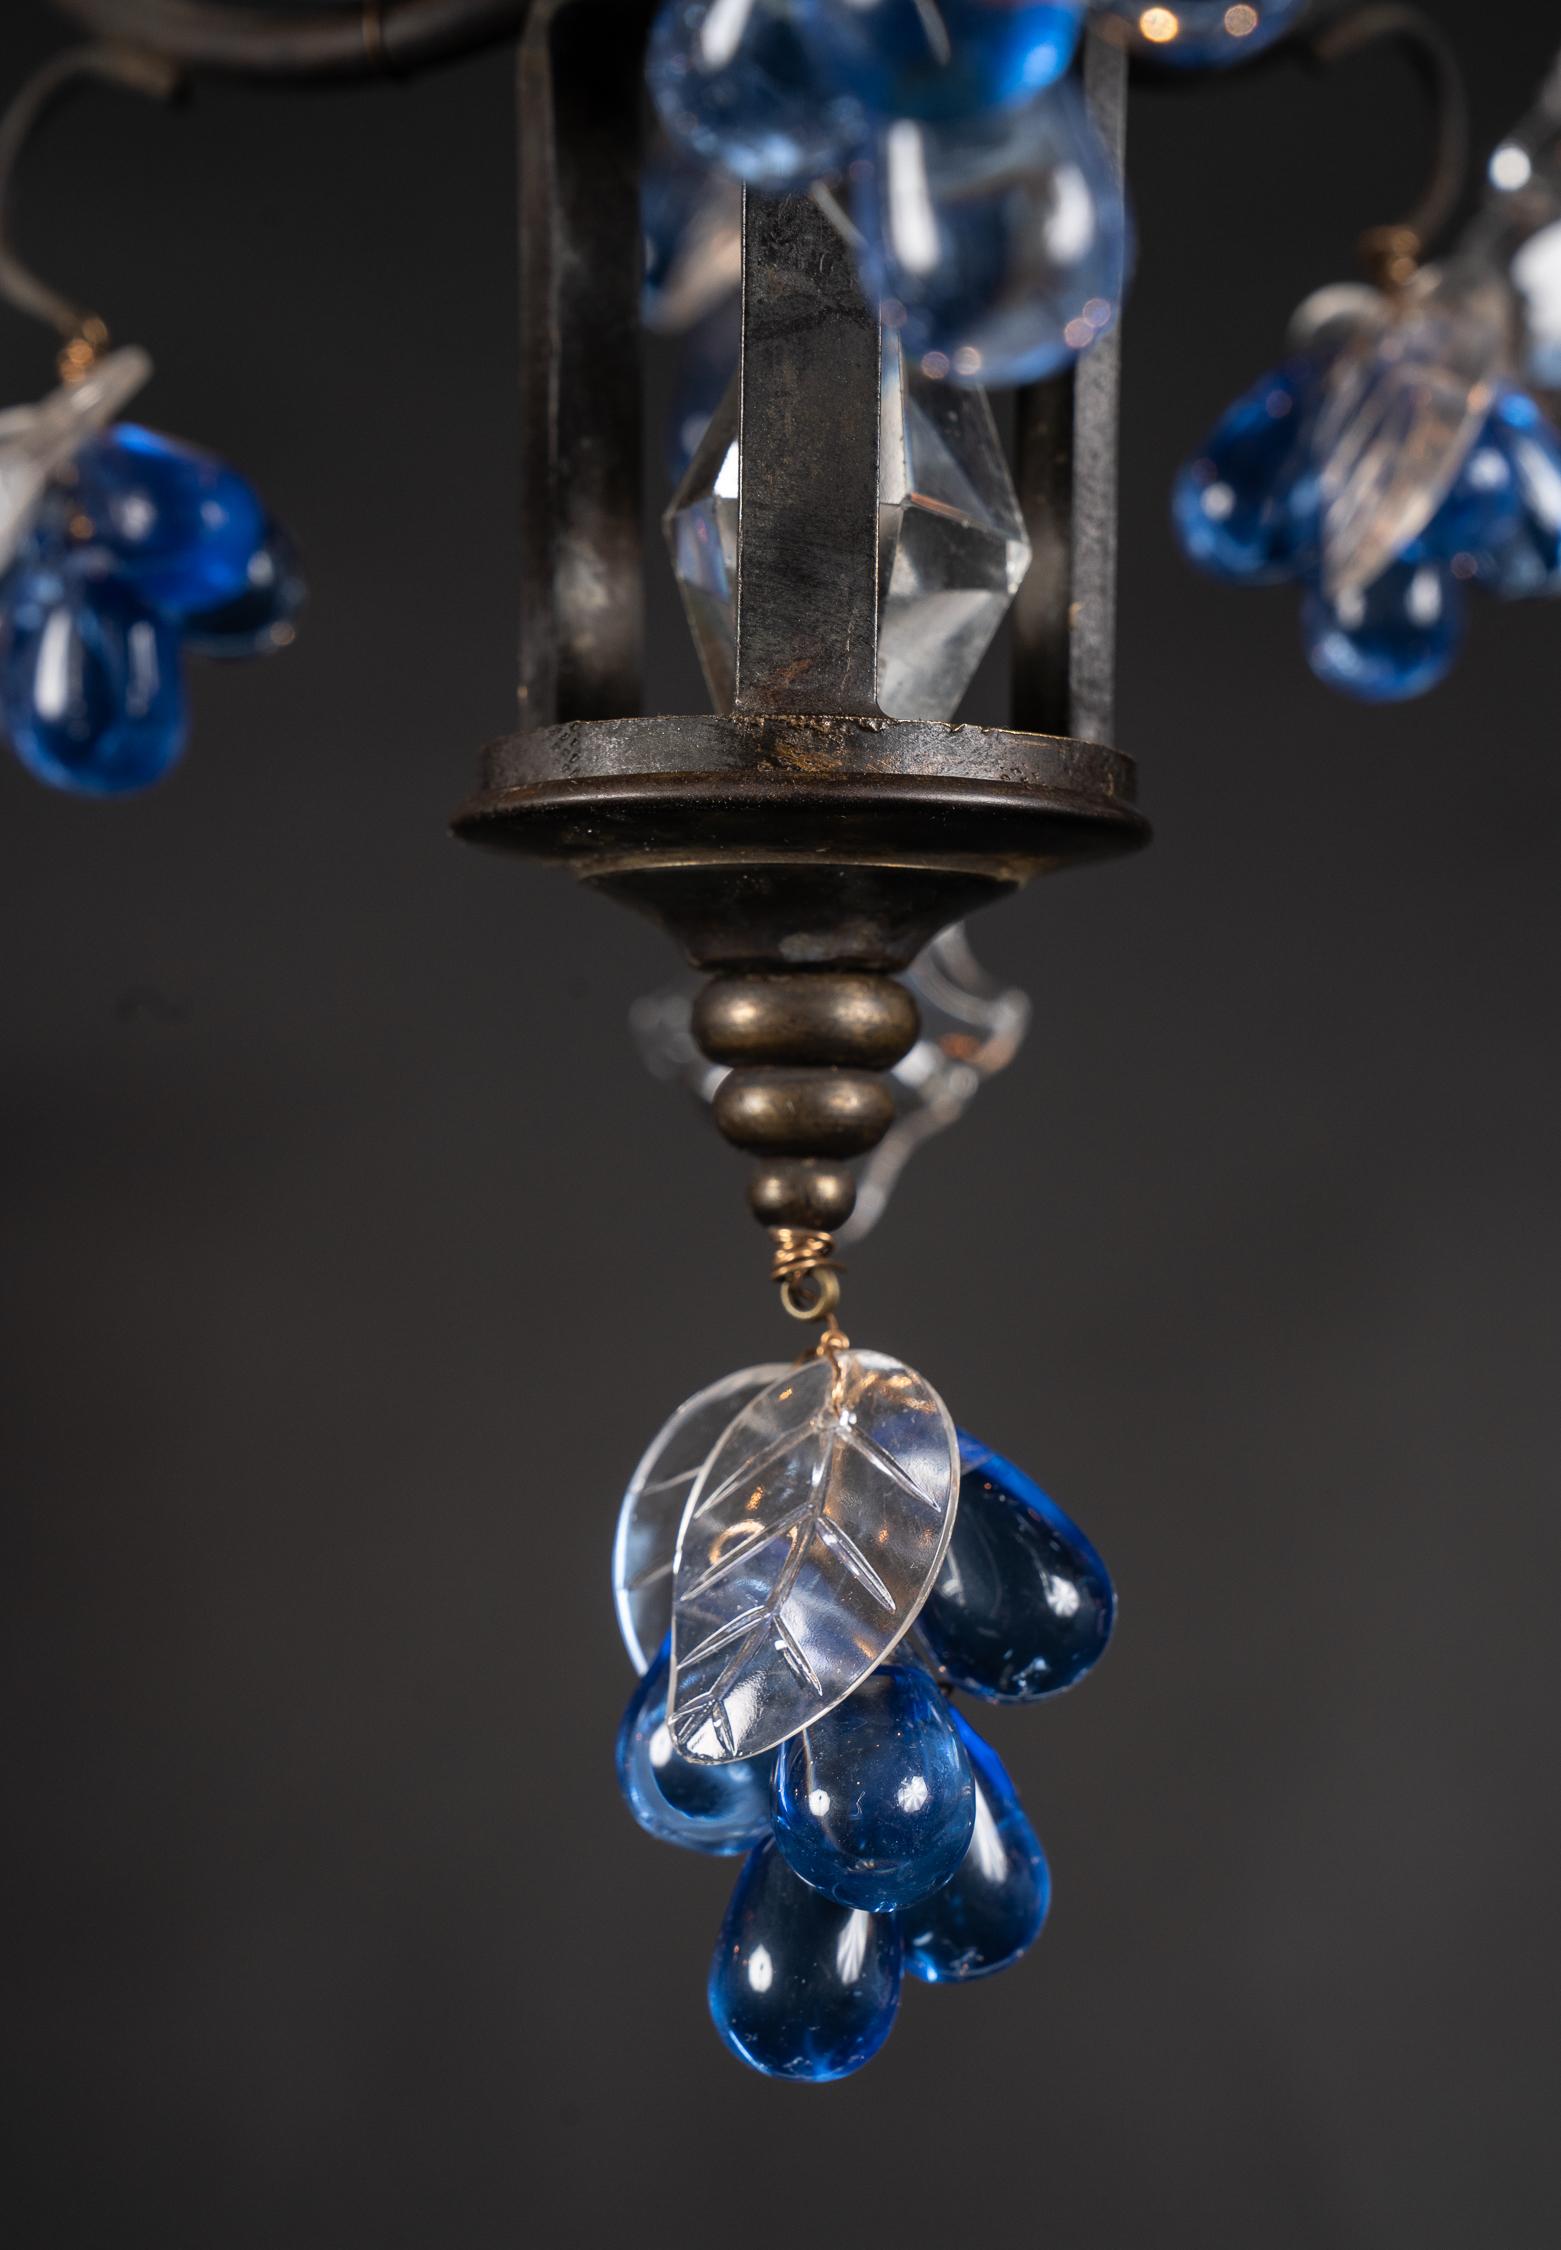 Ce lustre italien Louis XV est réalisé en bronze patiné dans un design classique de panier. Elle est ornée d'une couronne d'étoiles en cristal clair et de raisins en cristal bleu dont les feuilles sont gravées en clair. En suivant l'écoulement des